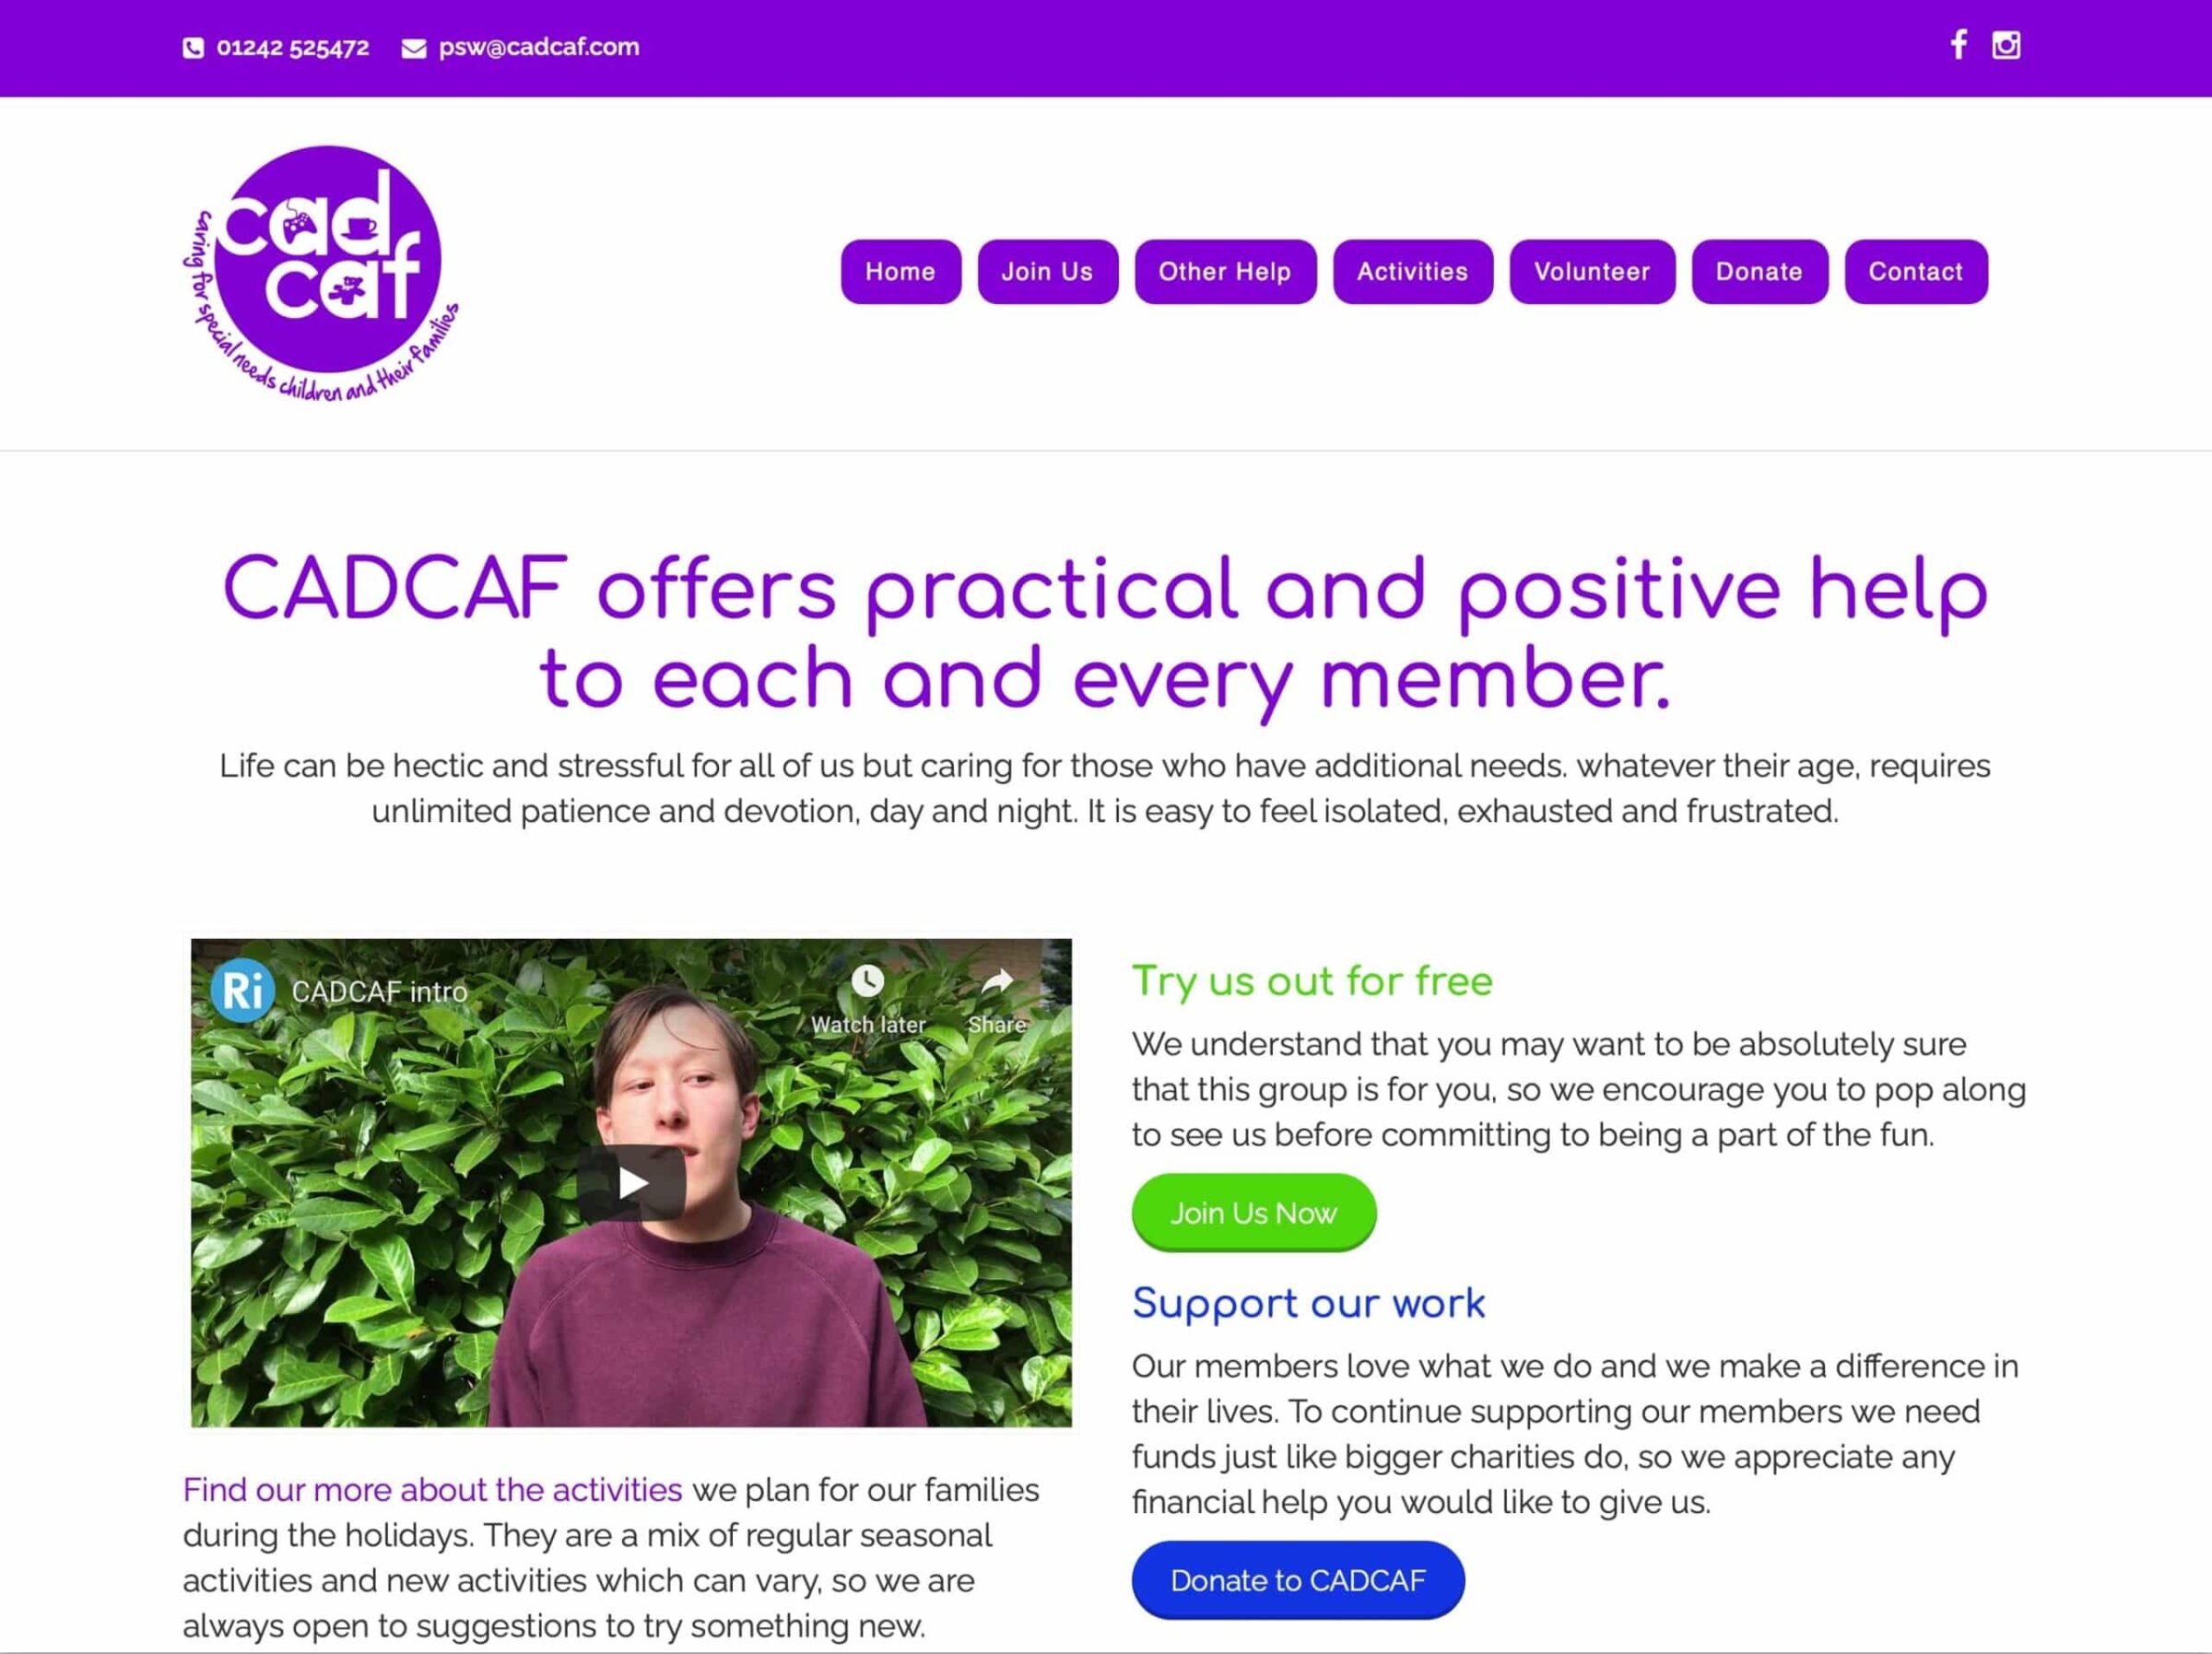 CADCAF website cadcaf.com